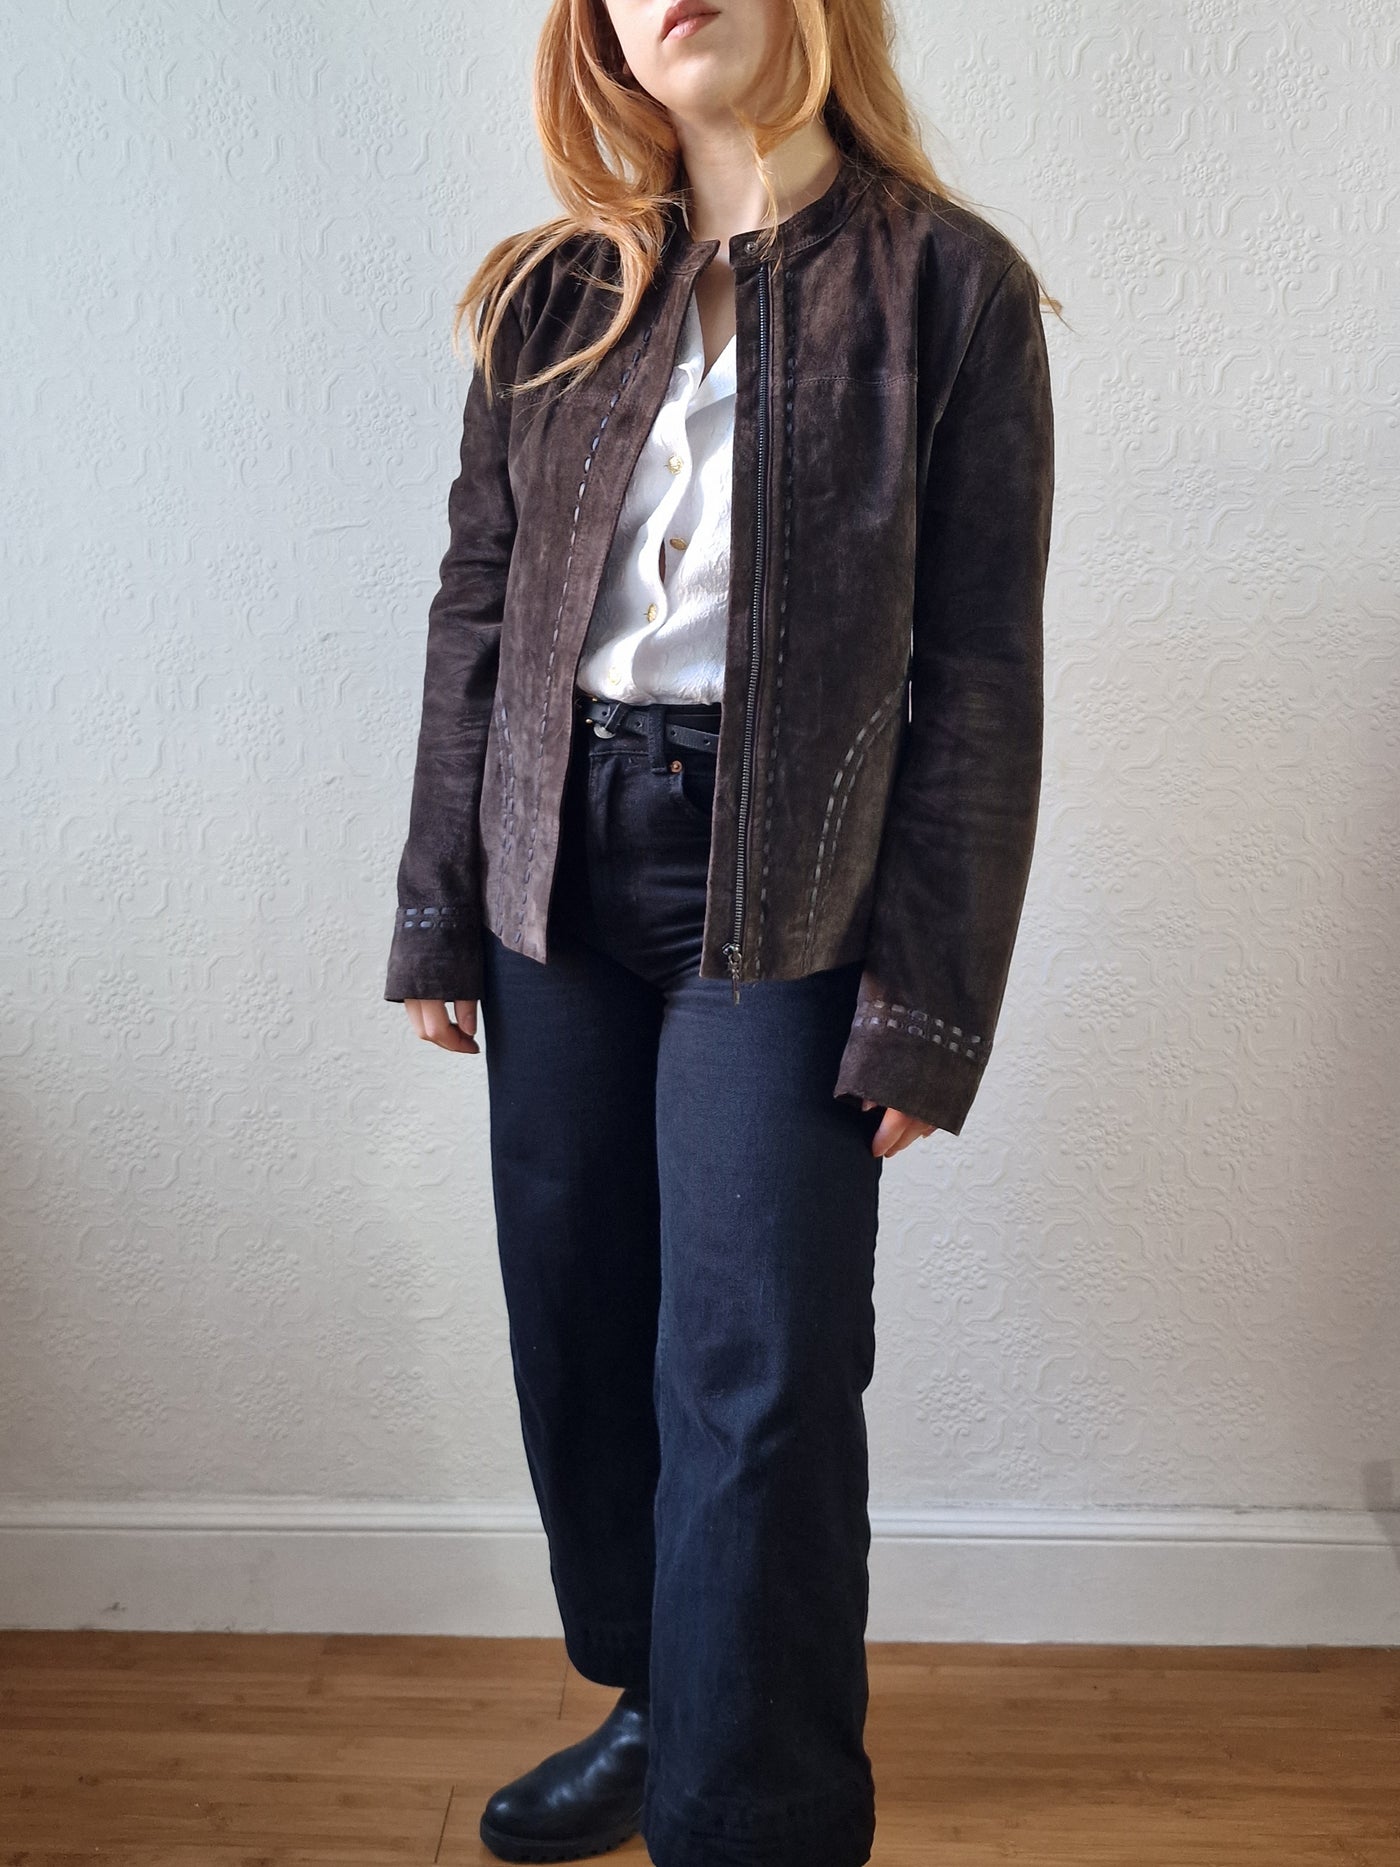 Vintage 90s Dark Brown Genuine Suede Leather Jacket - S